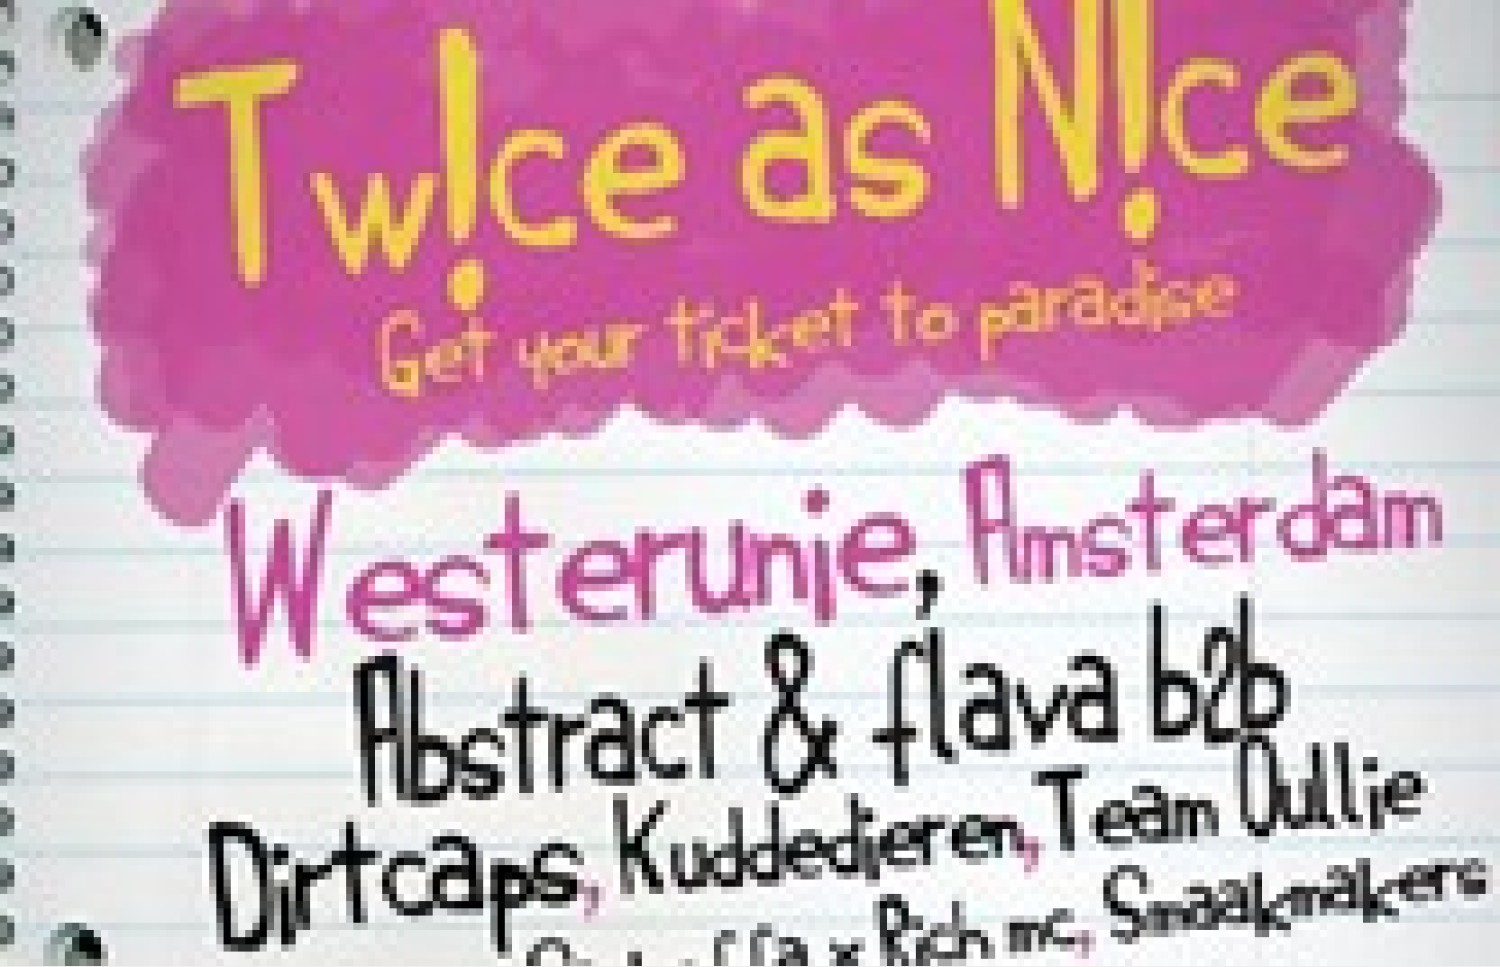 Party nieuws: Eerste editie Tw!ce as N!ce in de Westerunie op 9 november!